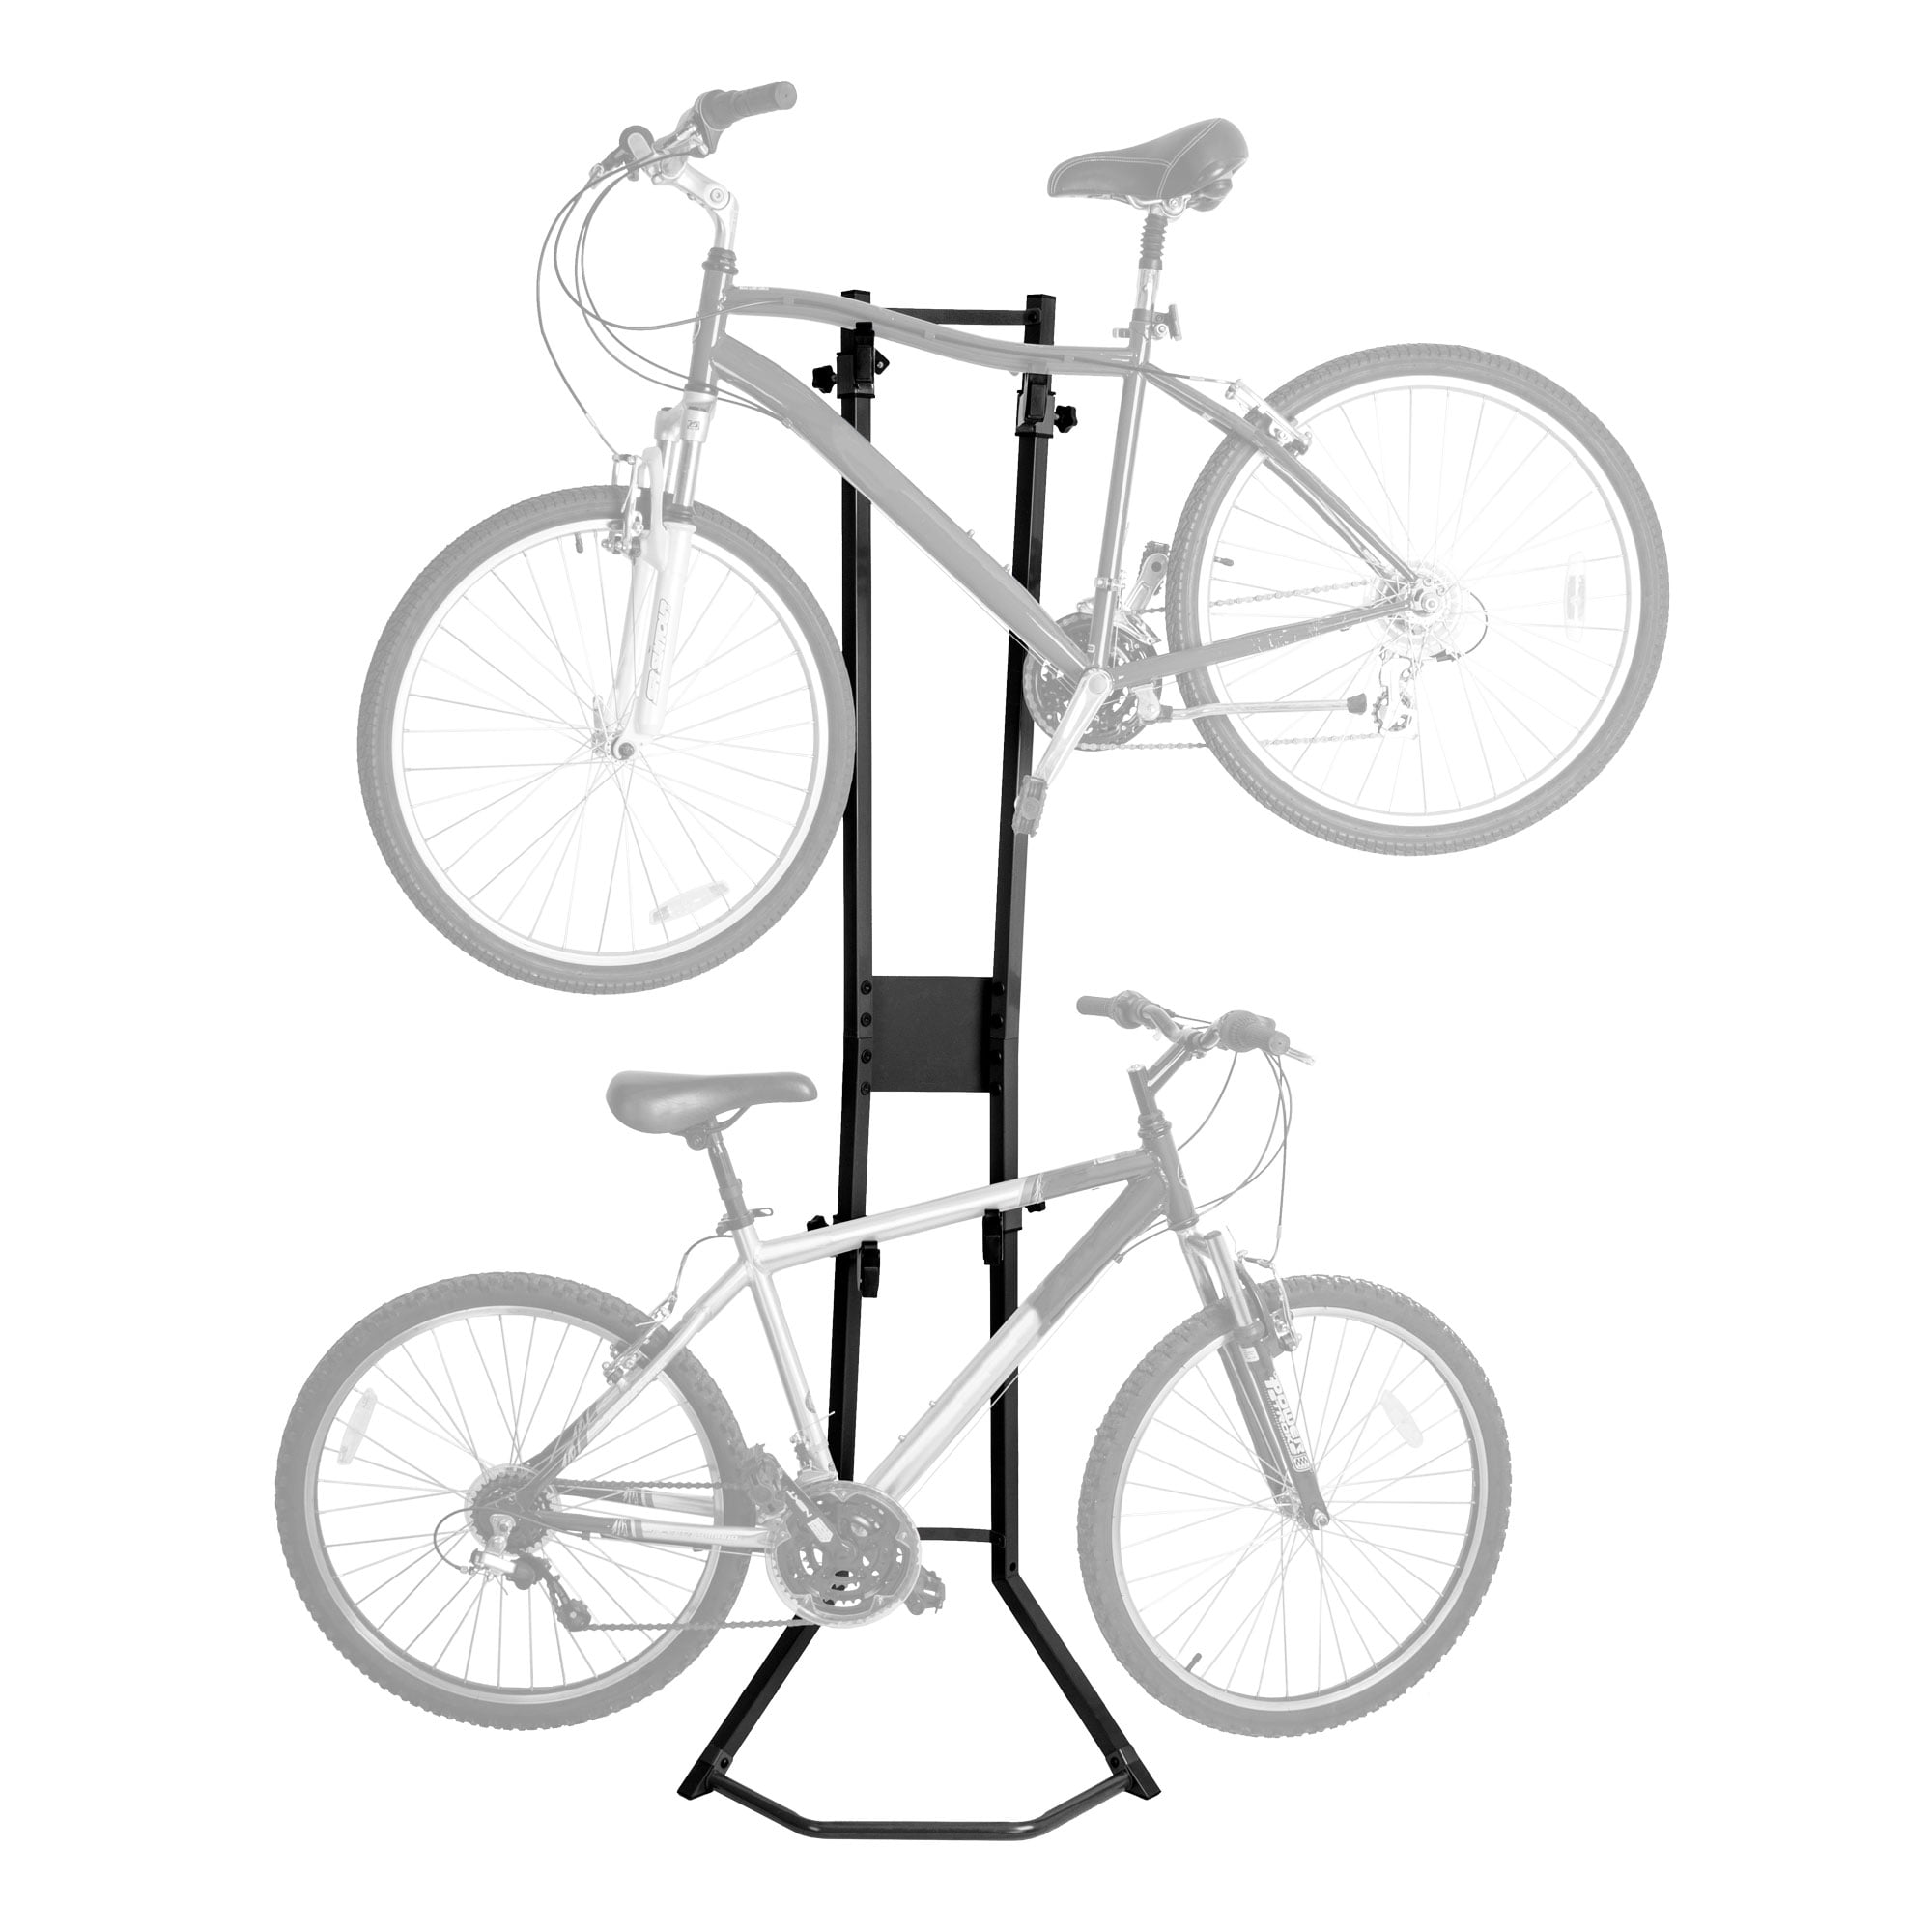 4 x Bicycle Floor Parking Rack Stand MTB Road Bike Indoor Nook Garage Storage 